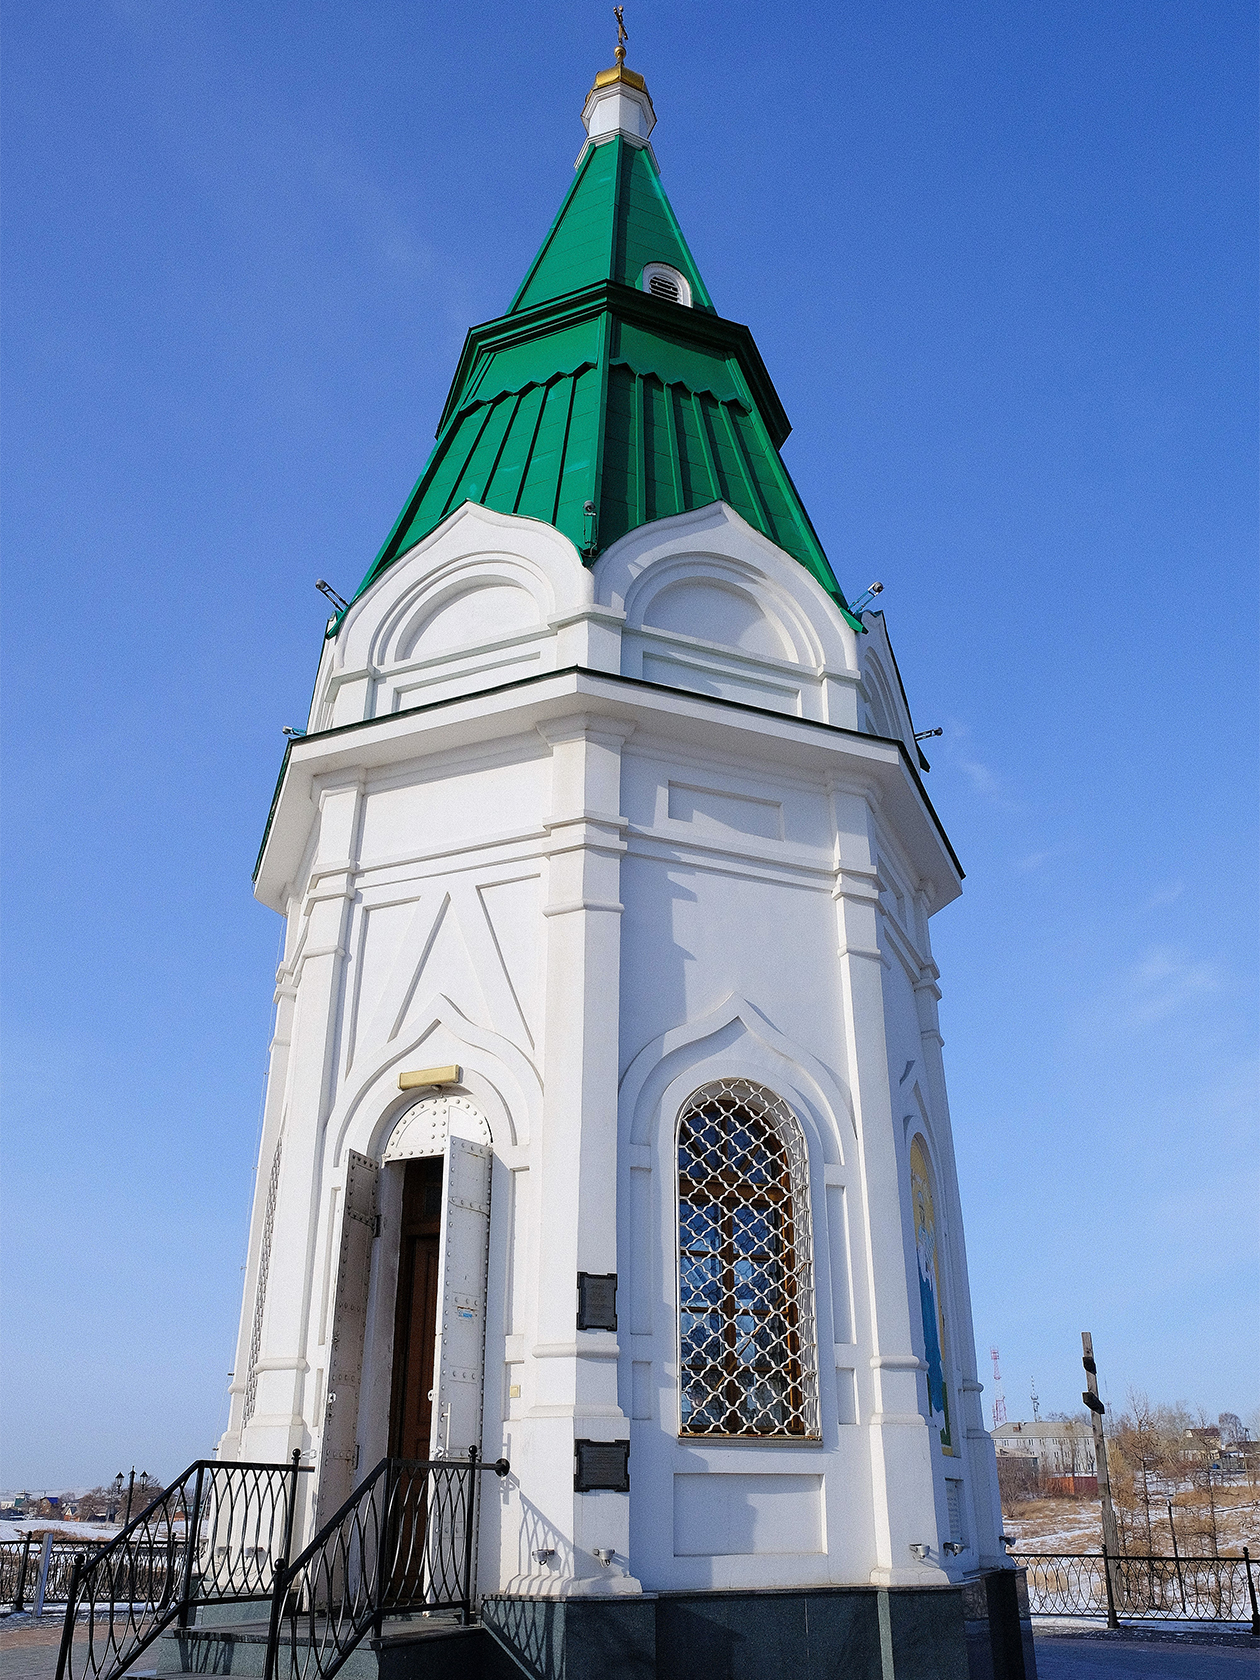 Фотография: Vyacheslav Bukharov / Wikimedia Commons